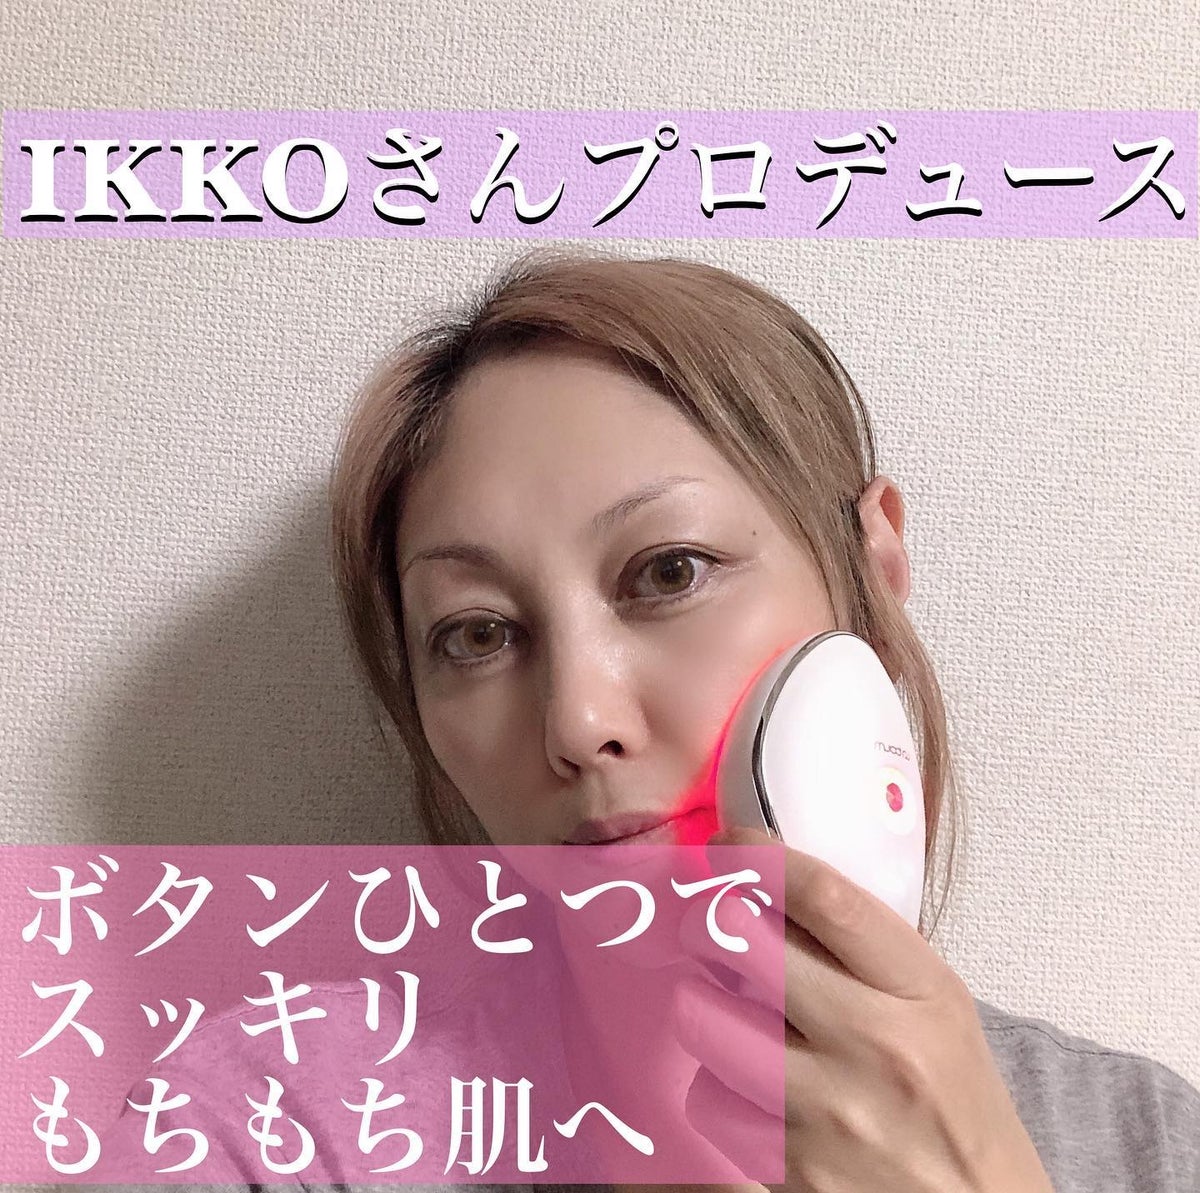 MEラボン IKKOさんプロデュース 大人気美顔器 コードレス ボディにも